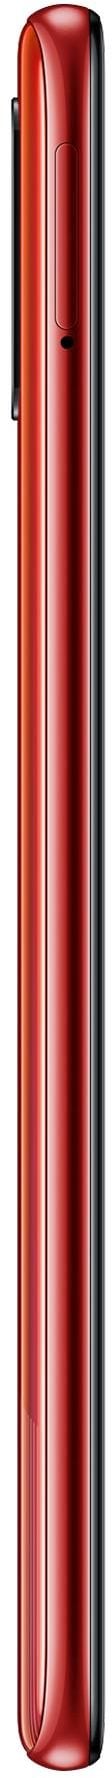 Samsung Galaxy A51 64GB_hor Red